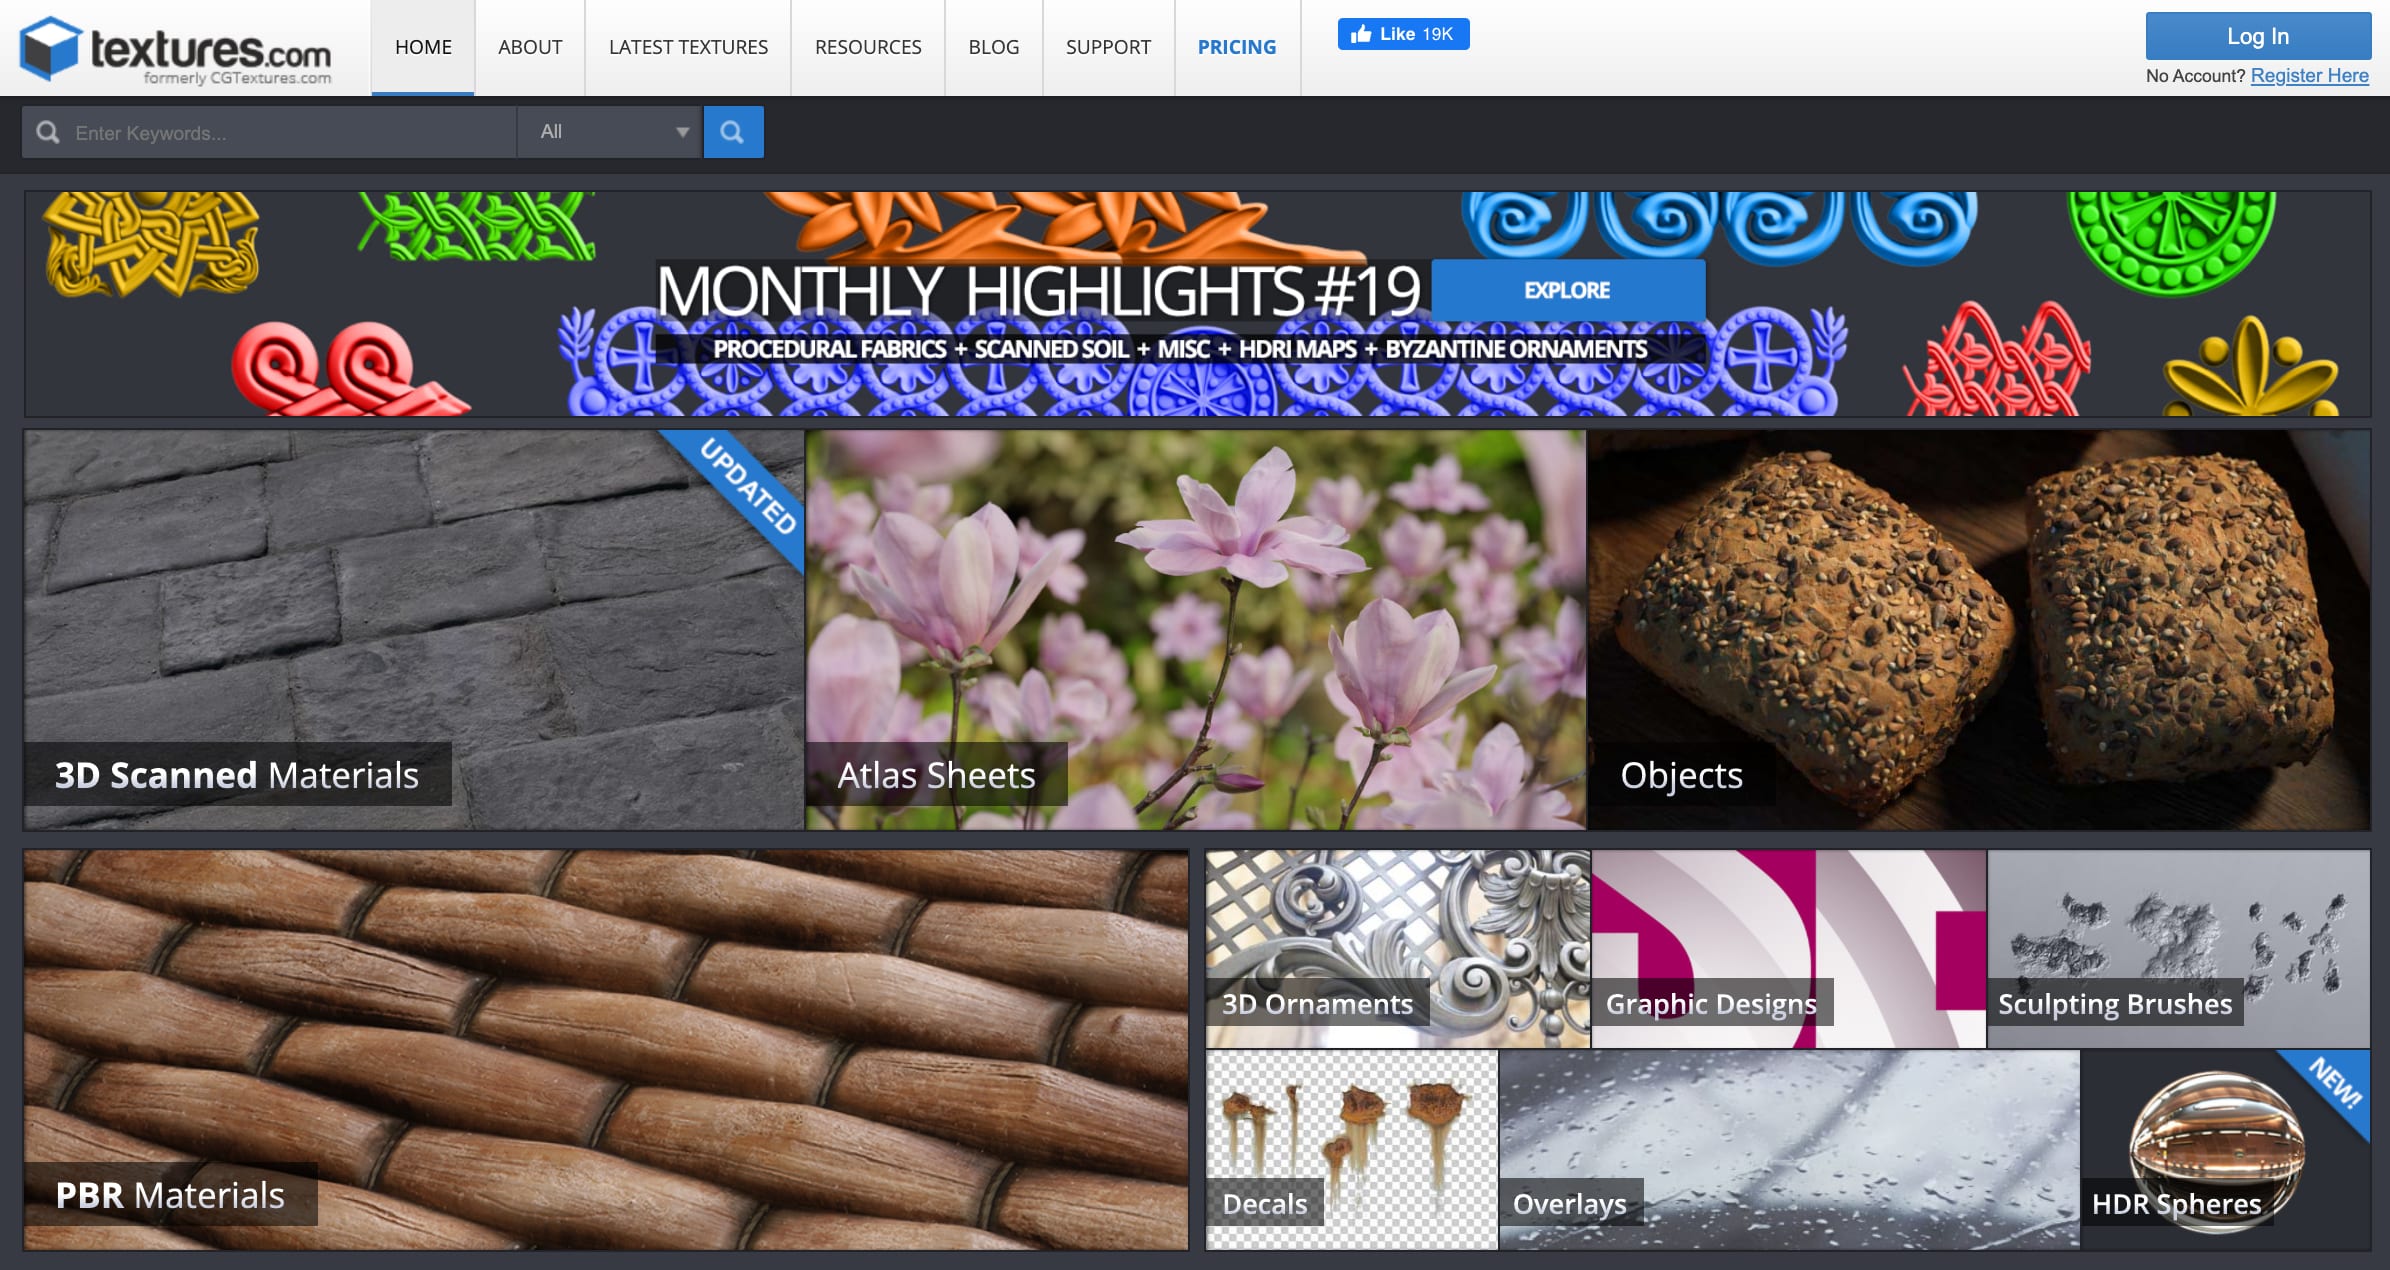 9 siti web dove scaricare texture e modelli per i tuoi progetti 3D